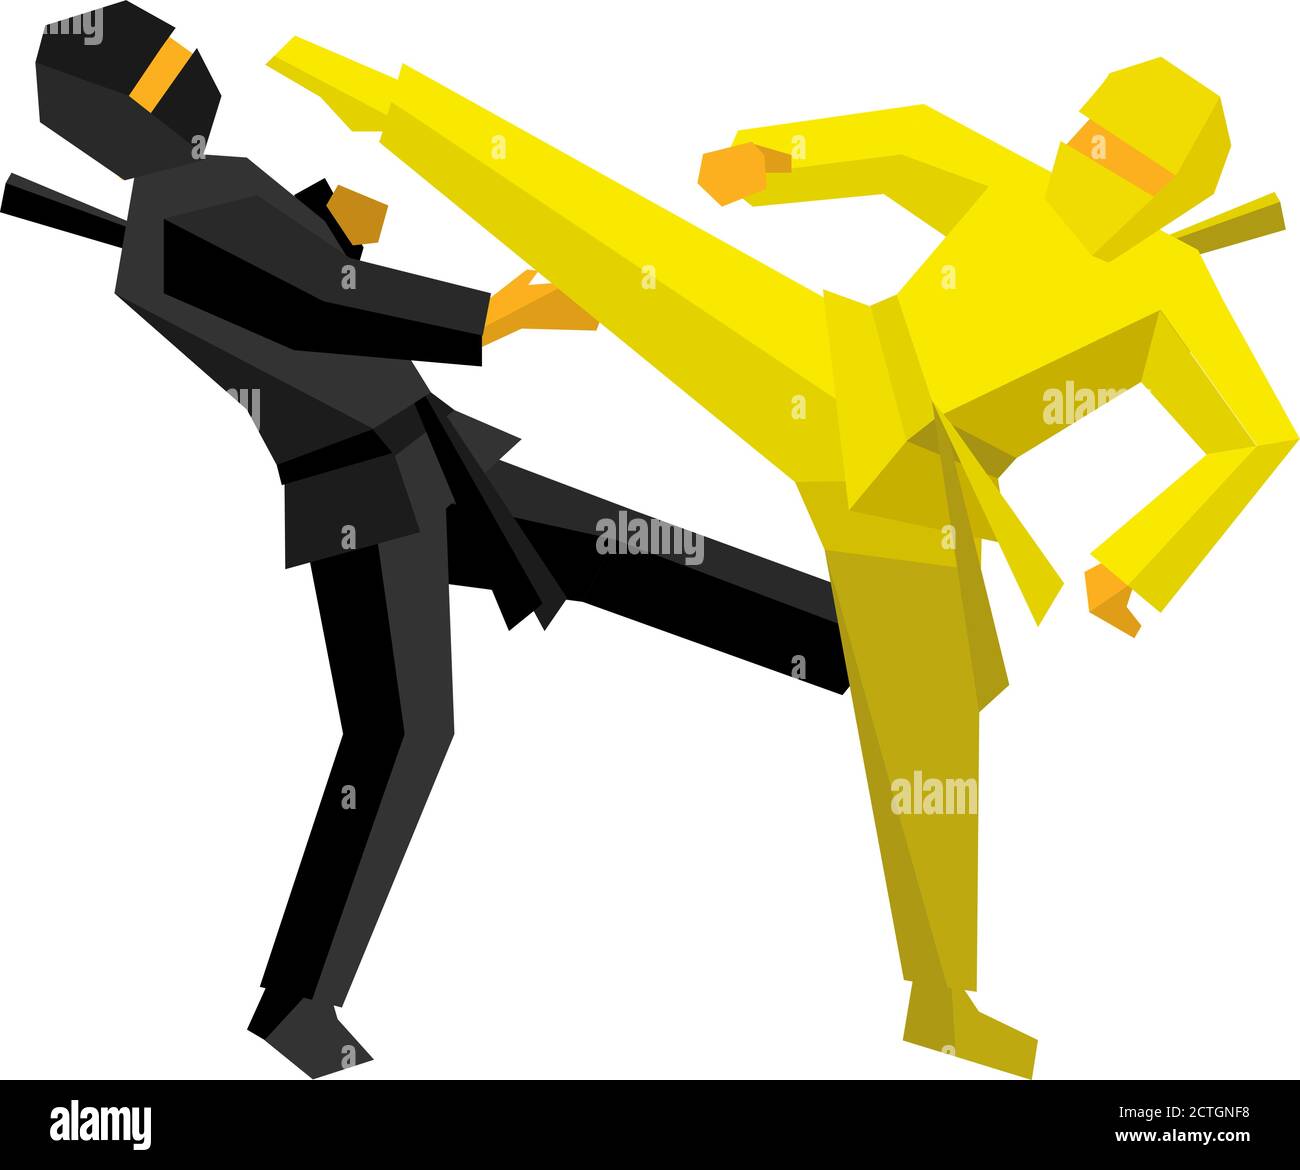 Schwarz und gelb Ninja Kampf. Kämpfer der Kampfkunst treffen einander. Vektorgrafik auf weißem Hintergrund. Stock Vektor